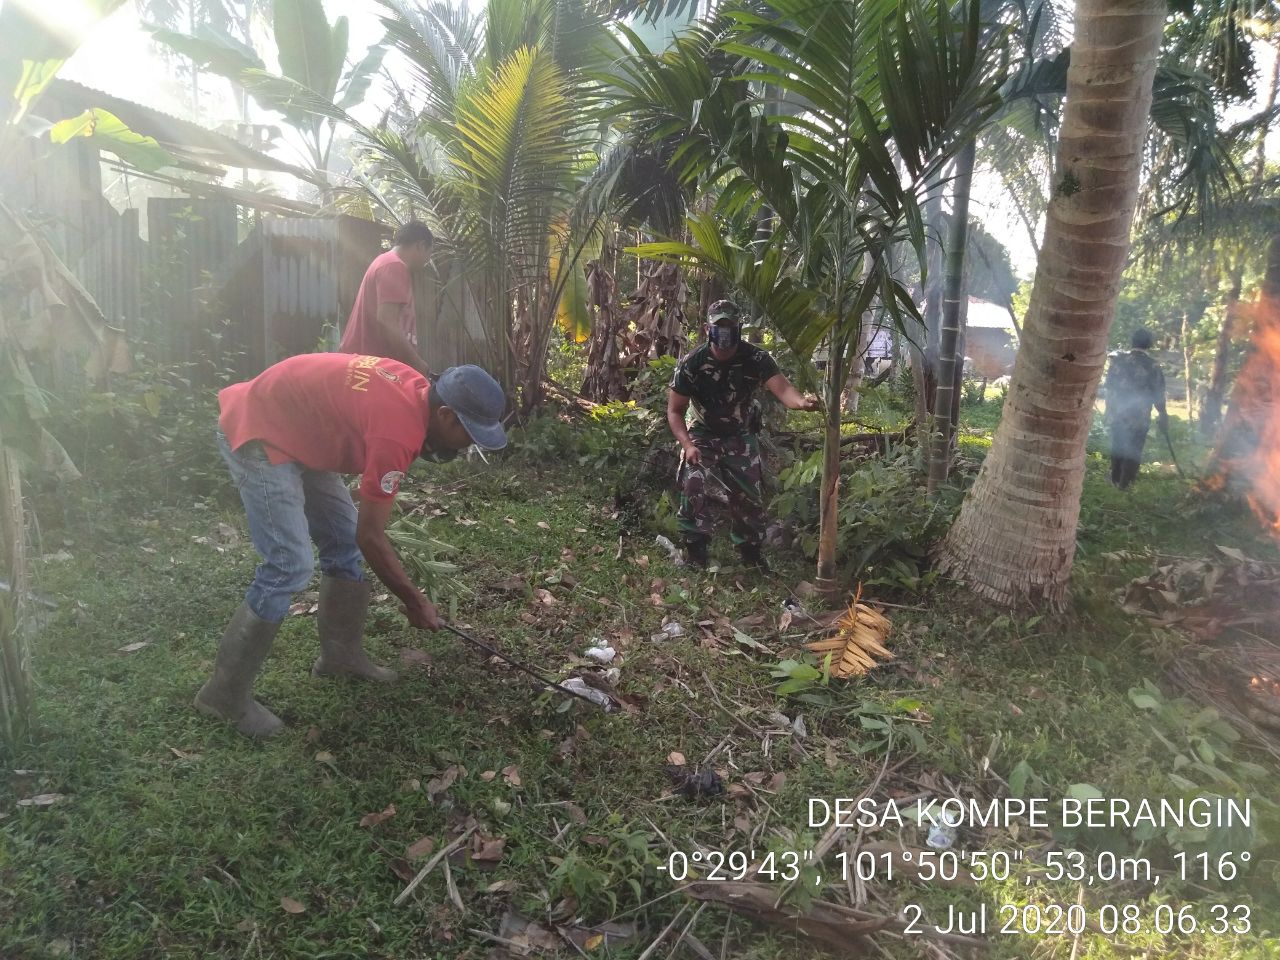 Tetap Mematuhi Protokol Kesehatan, Babinsa Koramil 06/Cerenti Dim 0302/Inhu Dukung Program Padat Karya Di Desa Kompe Berangin.